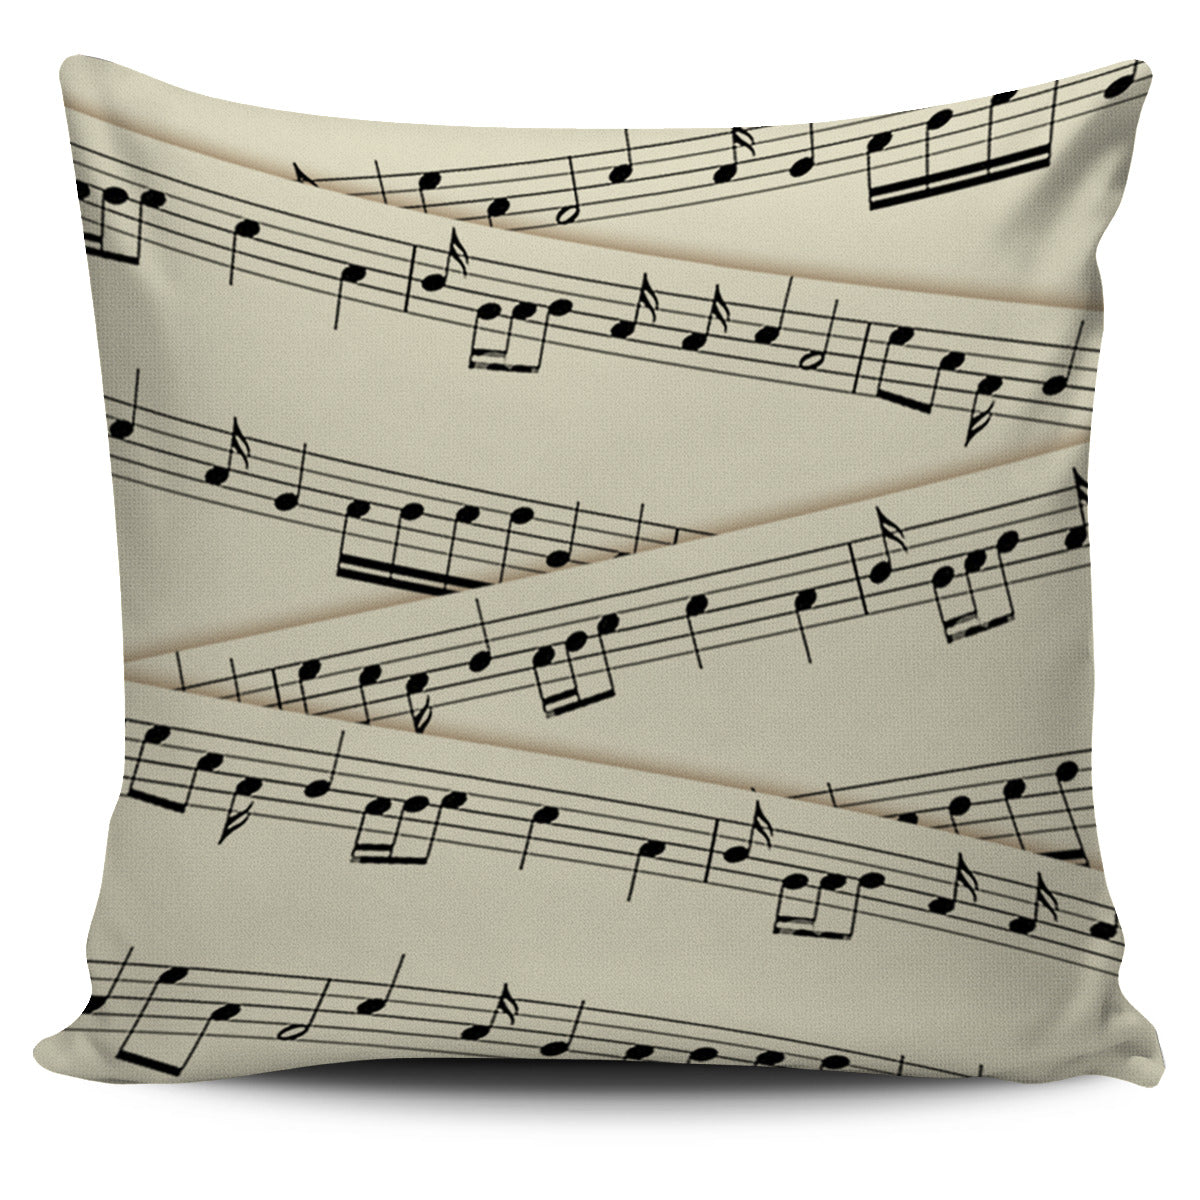 Sheet Music Pillow Cover